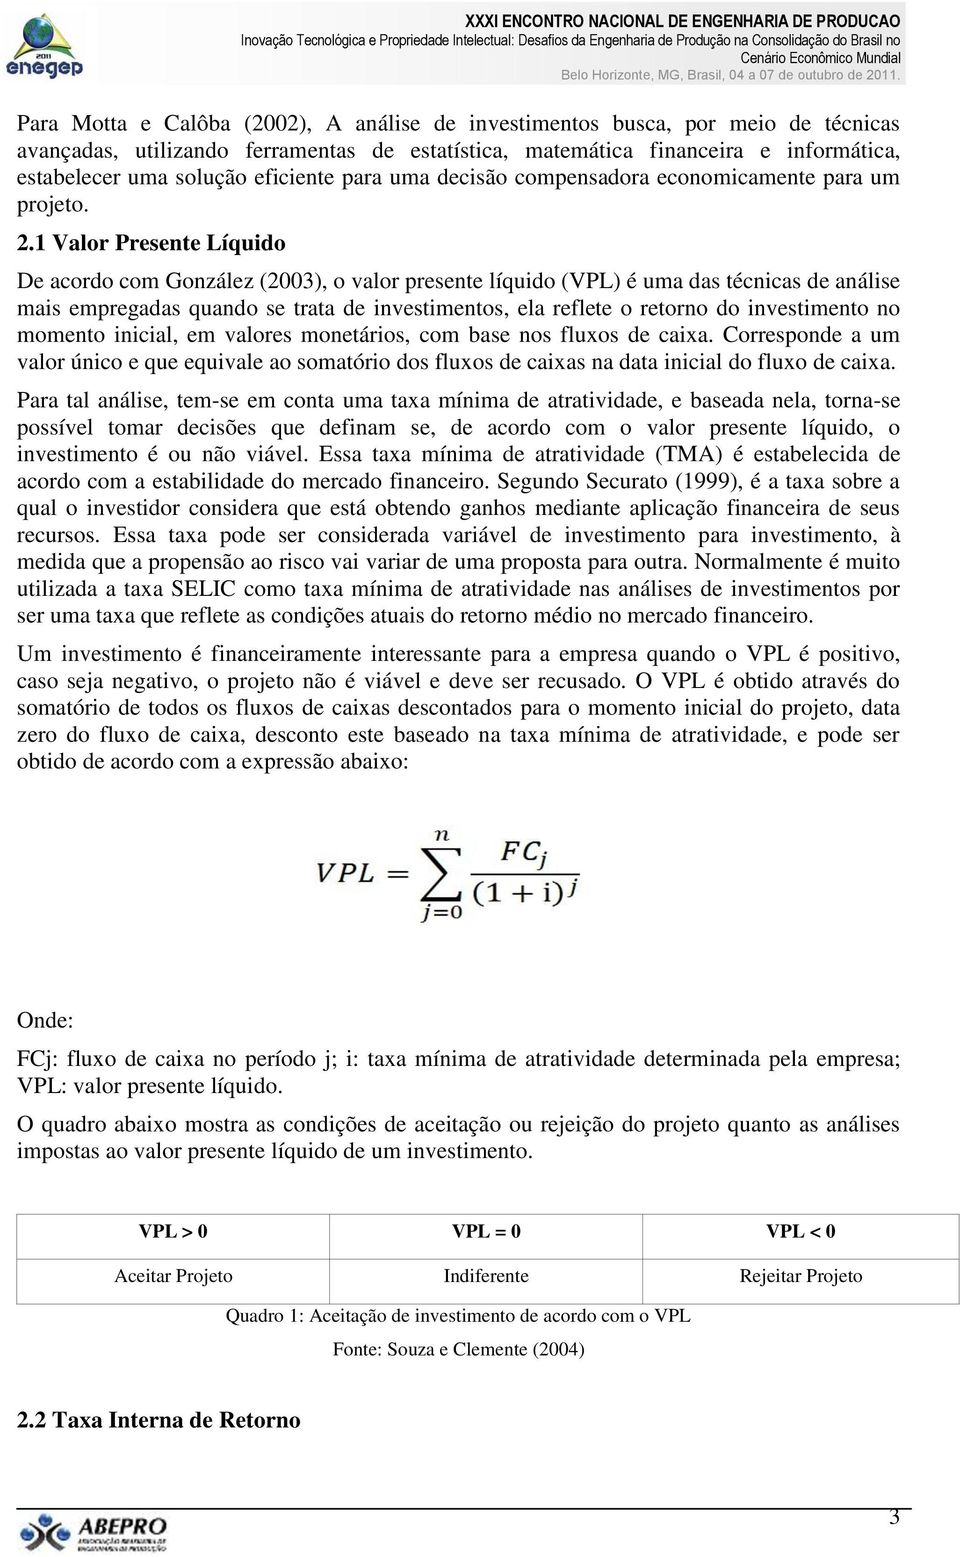 1 Valor Presente Líquido De acordo com González (2003), o valor presente líquido (VPL) é uma das técnicas de análise mais empregadas quando se trata de investimentos, ela reflete o retorno do